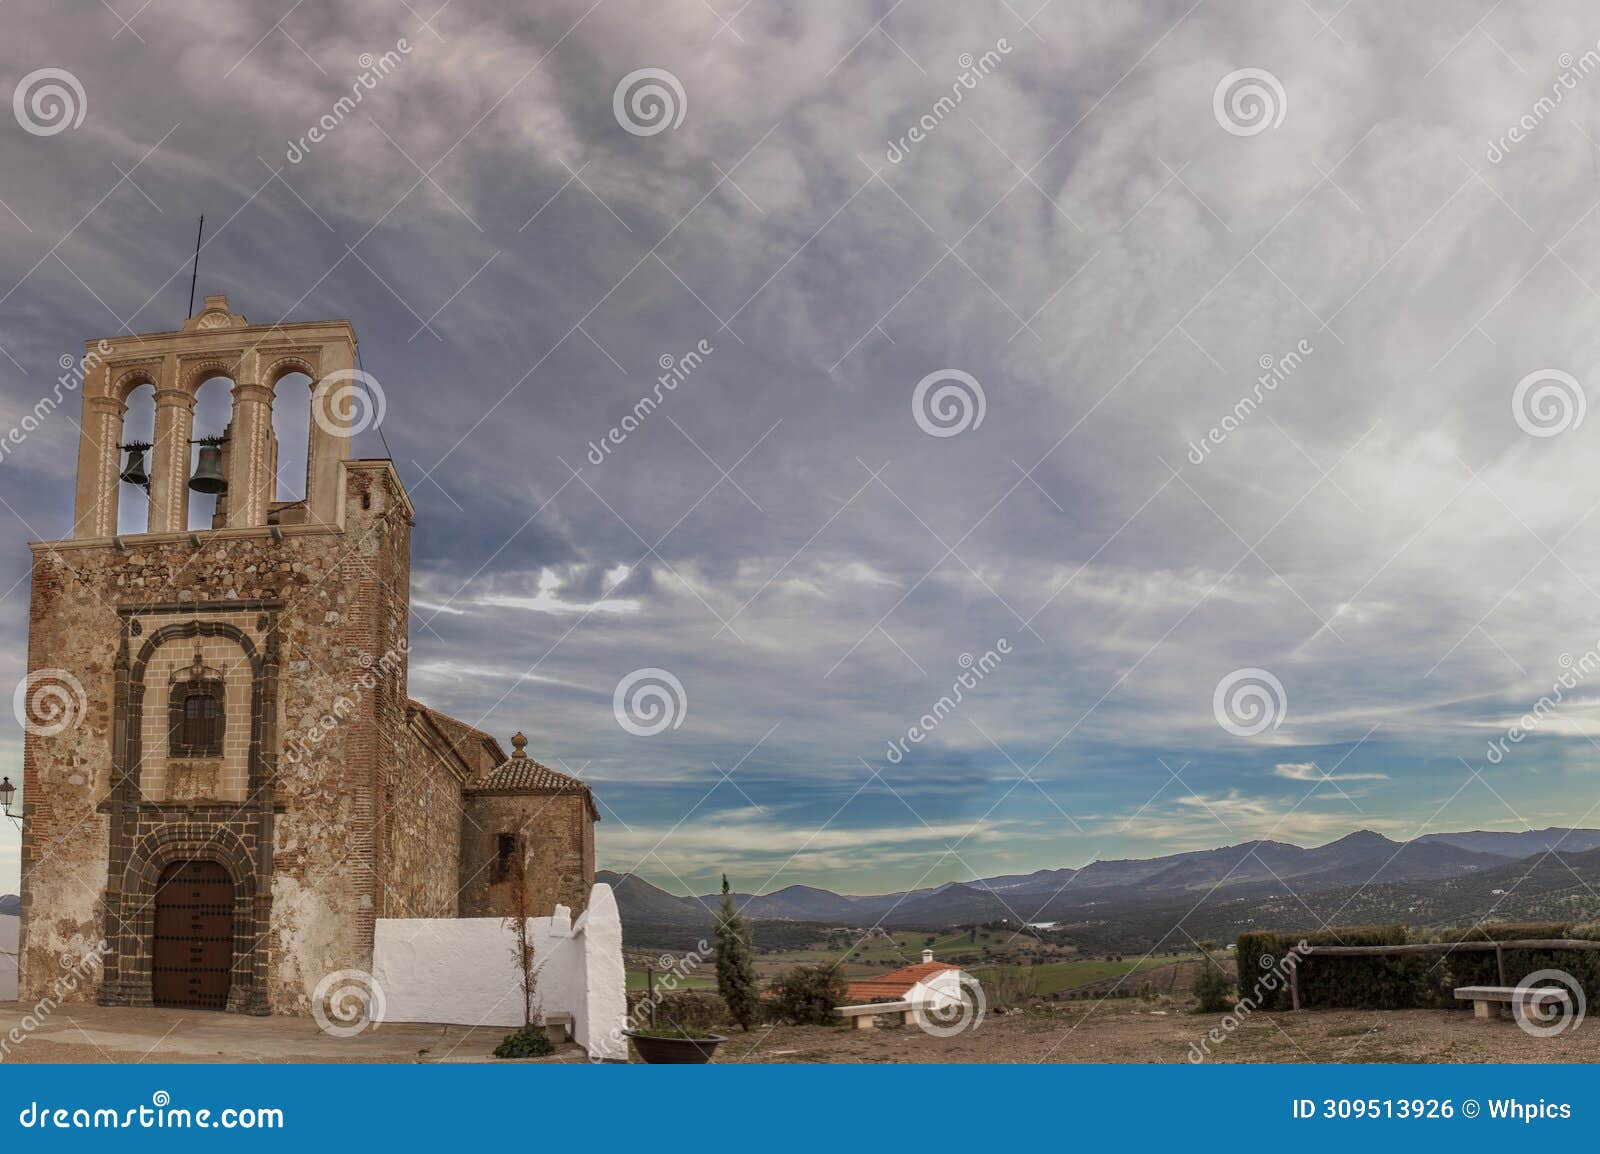 san cristobal castle church, nogales, spain